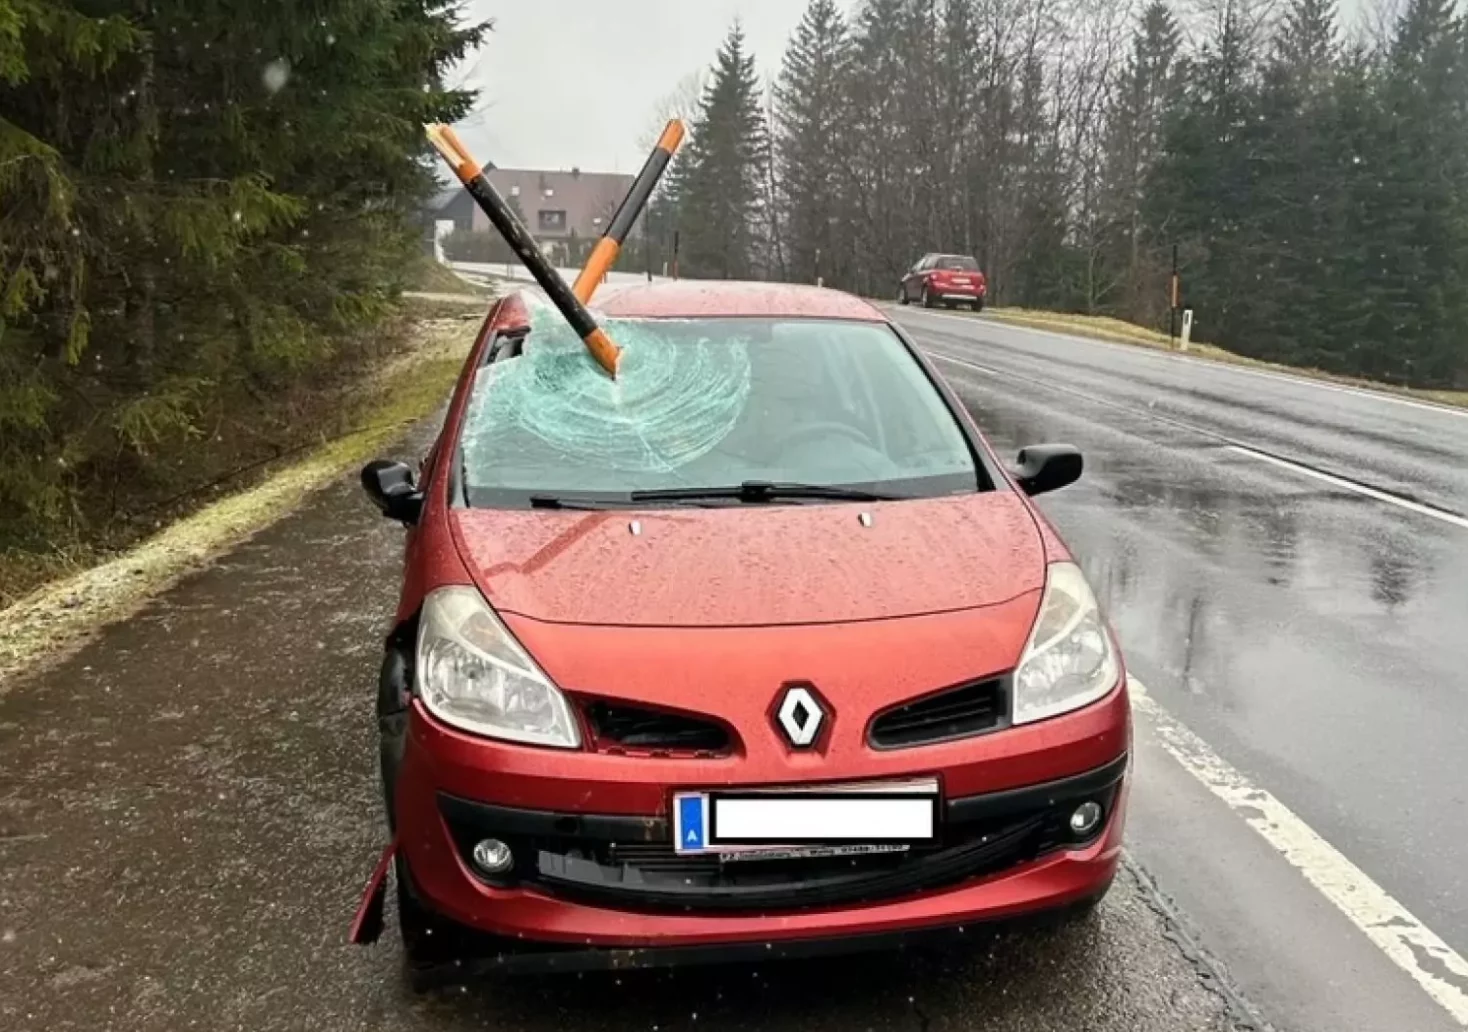 Bild auf 5min.at zeigt ein Auto nach einem Unfall. Zwei Schneestangen stecken im Auto.